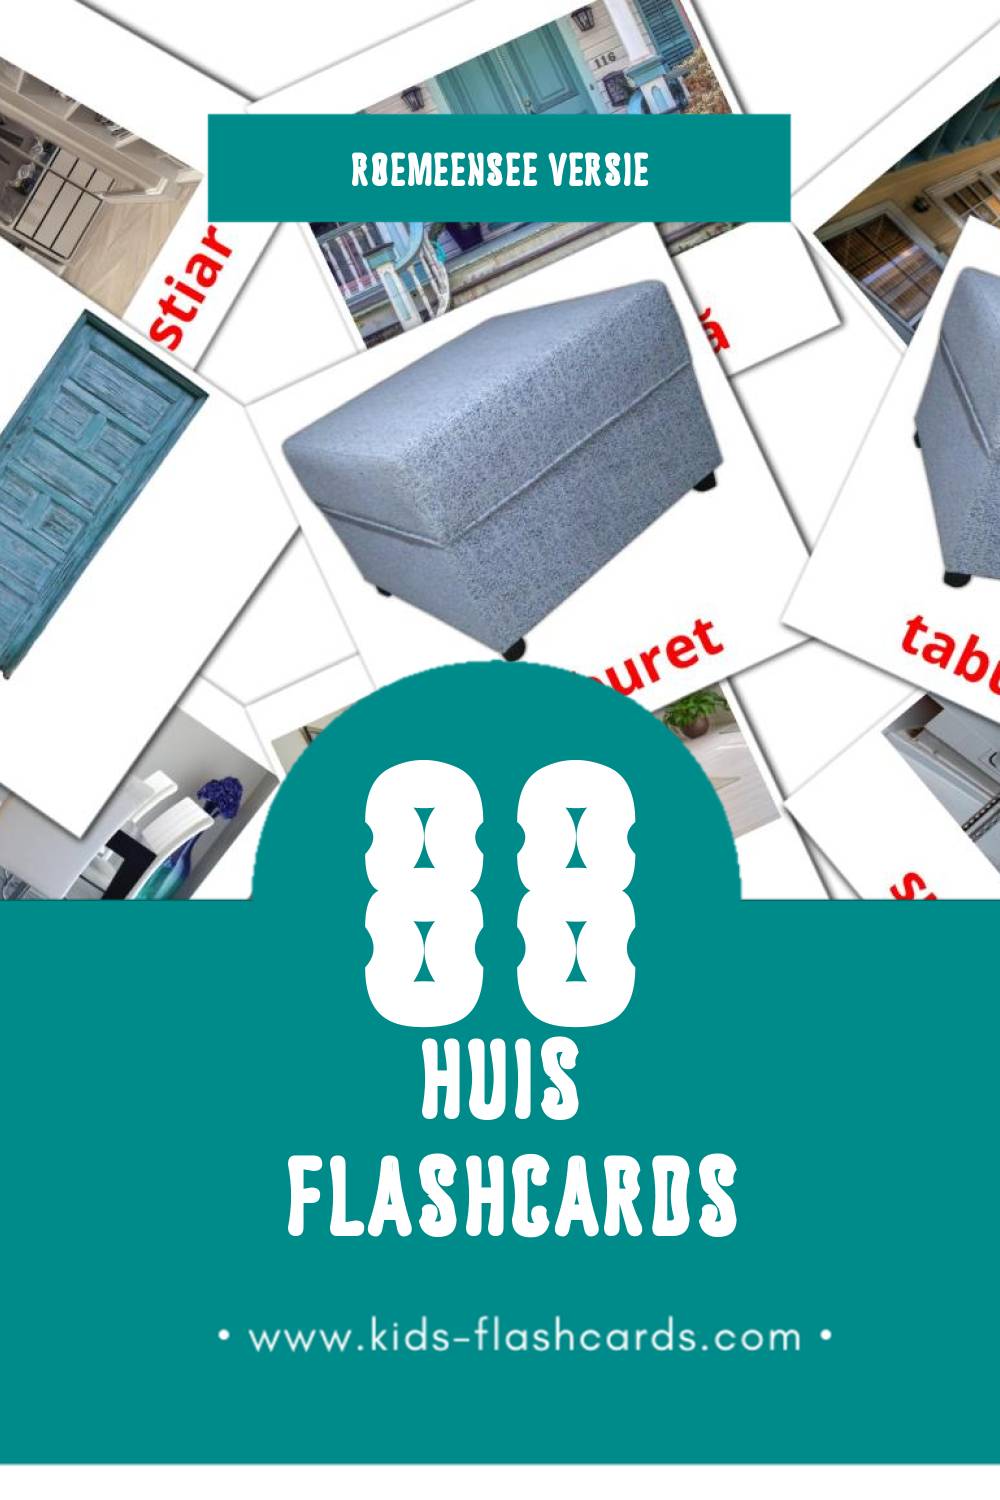 Visuele Acasă Flashcards voor Kleuters (88 kaarten in het Roemeense)